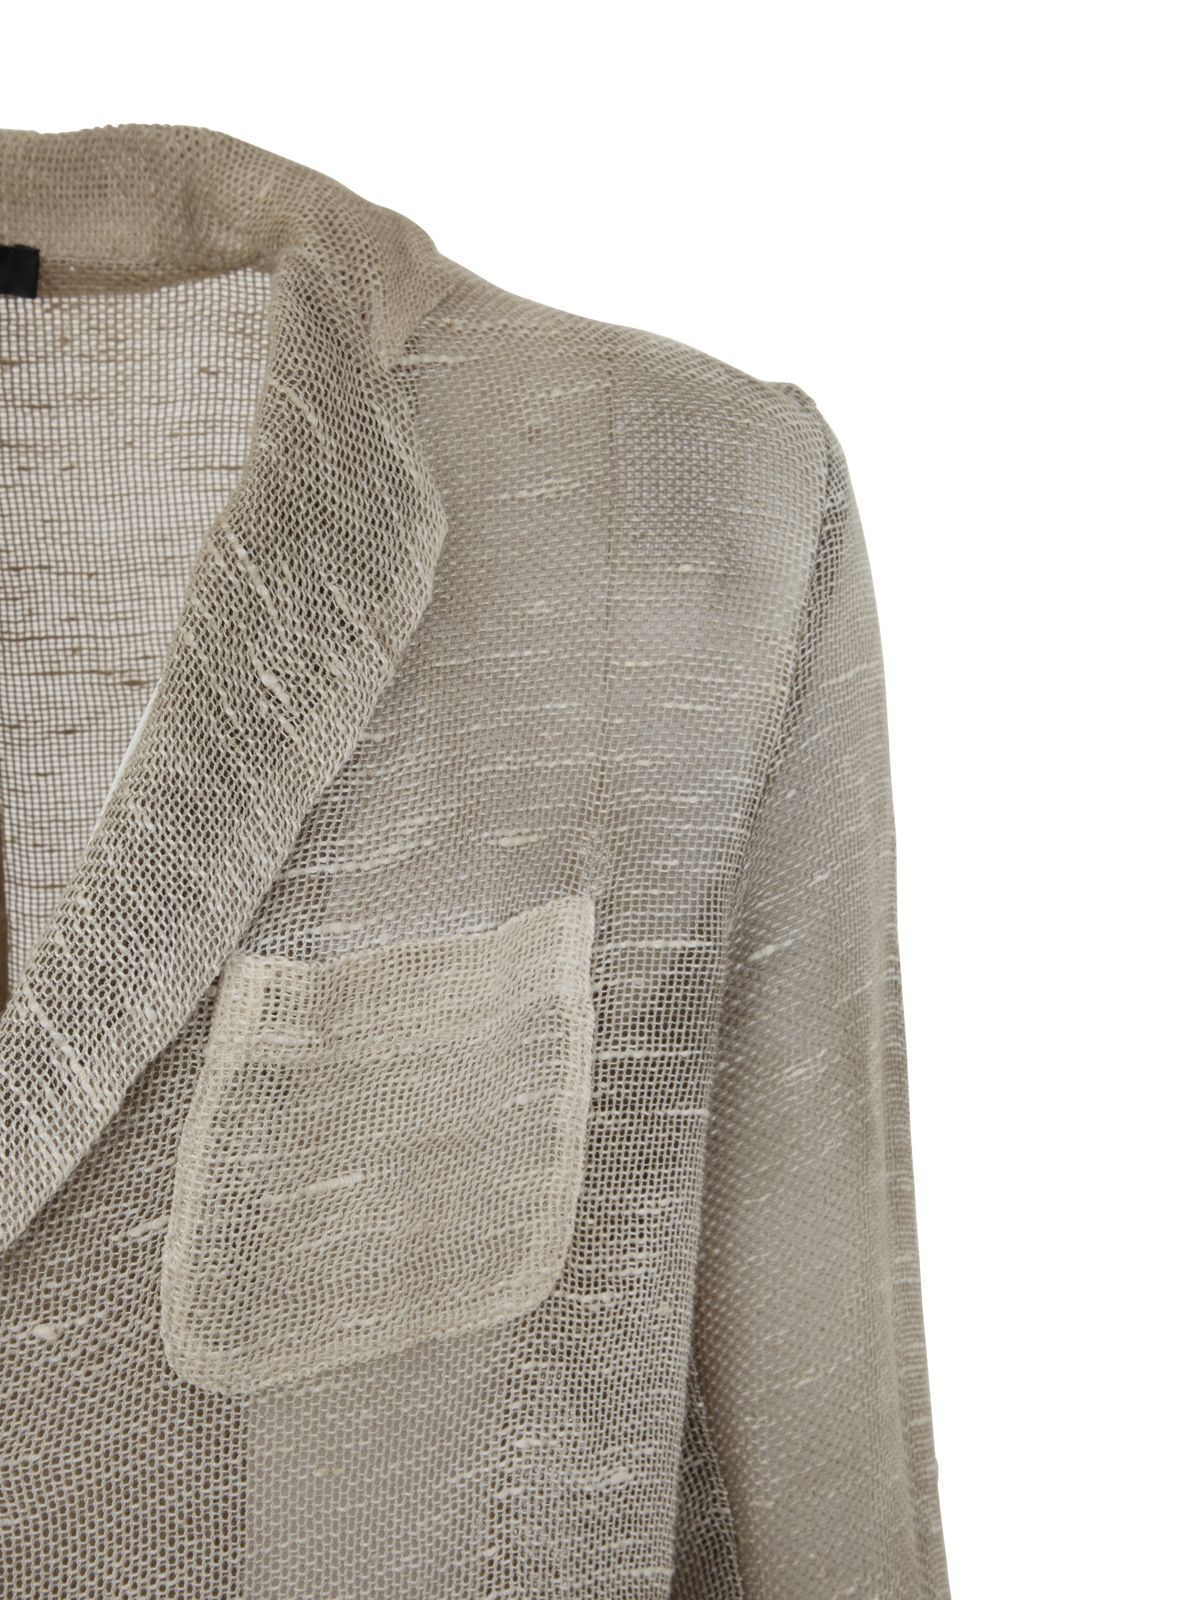 Shop Avant Toi Man Jackets Blazer:  Grey Jacket